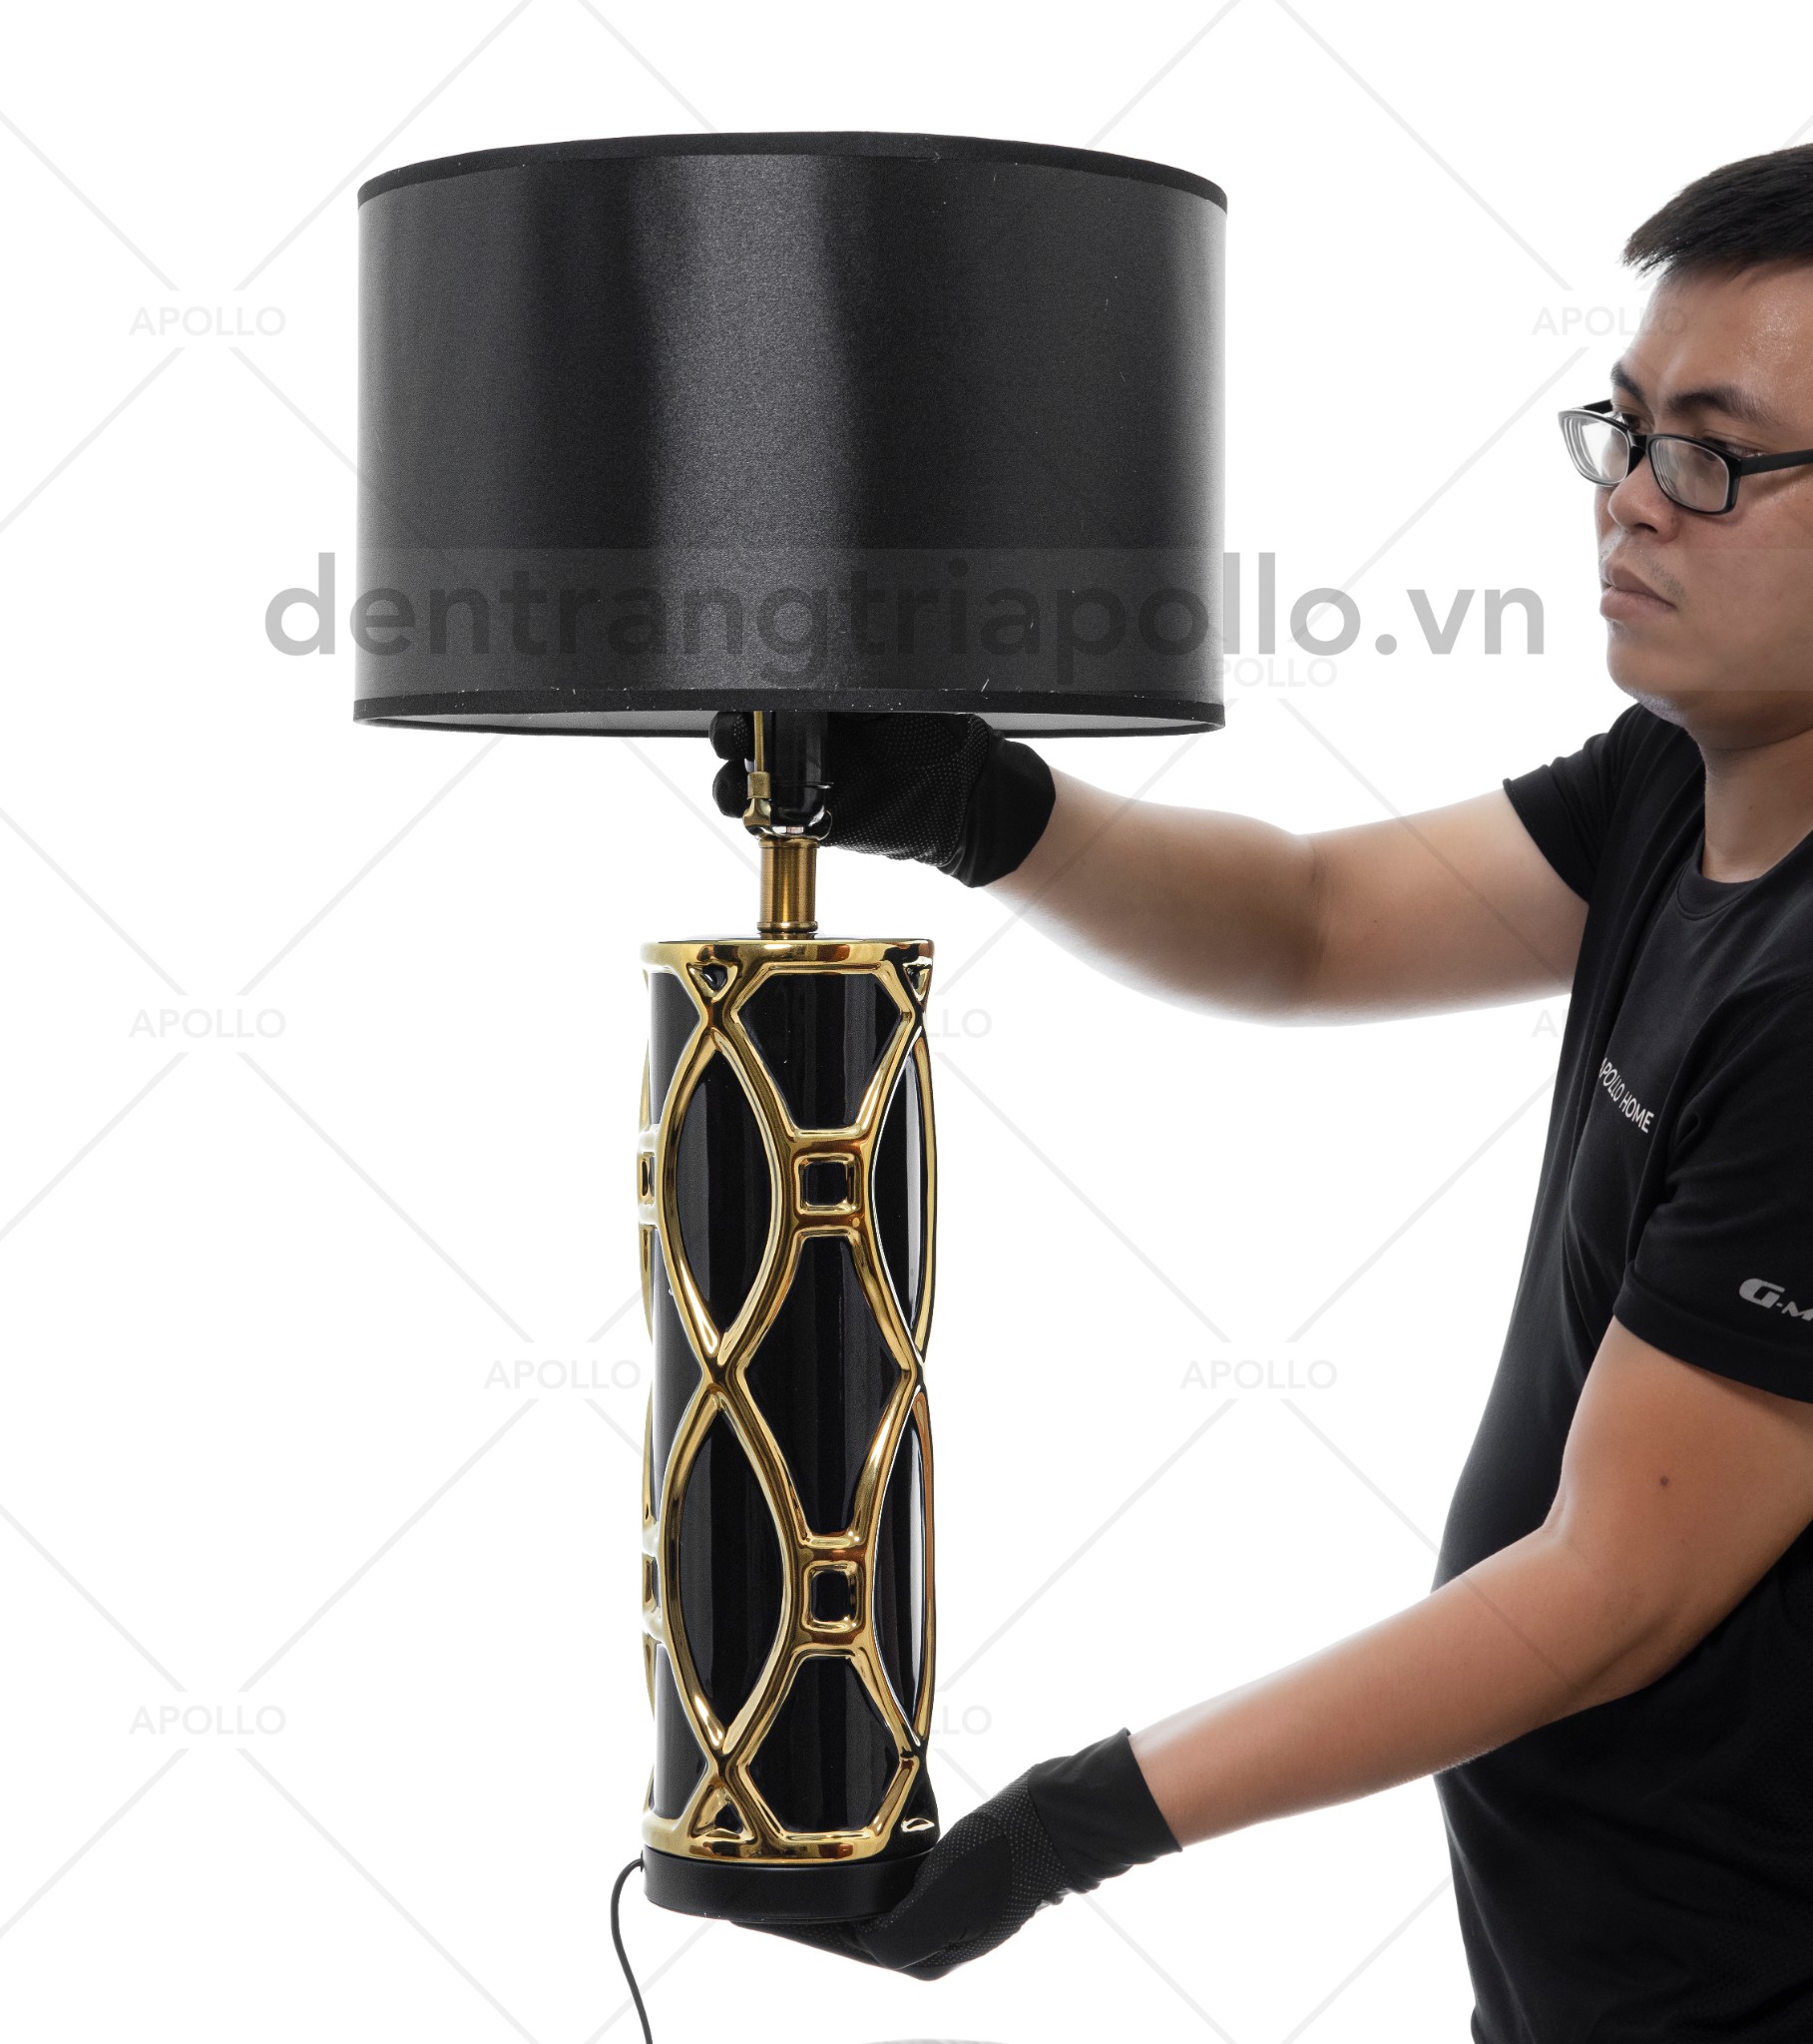 đèn bàn hiện đại cao cấp